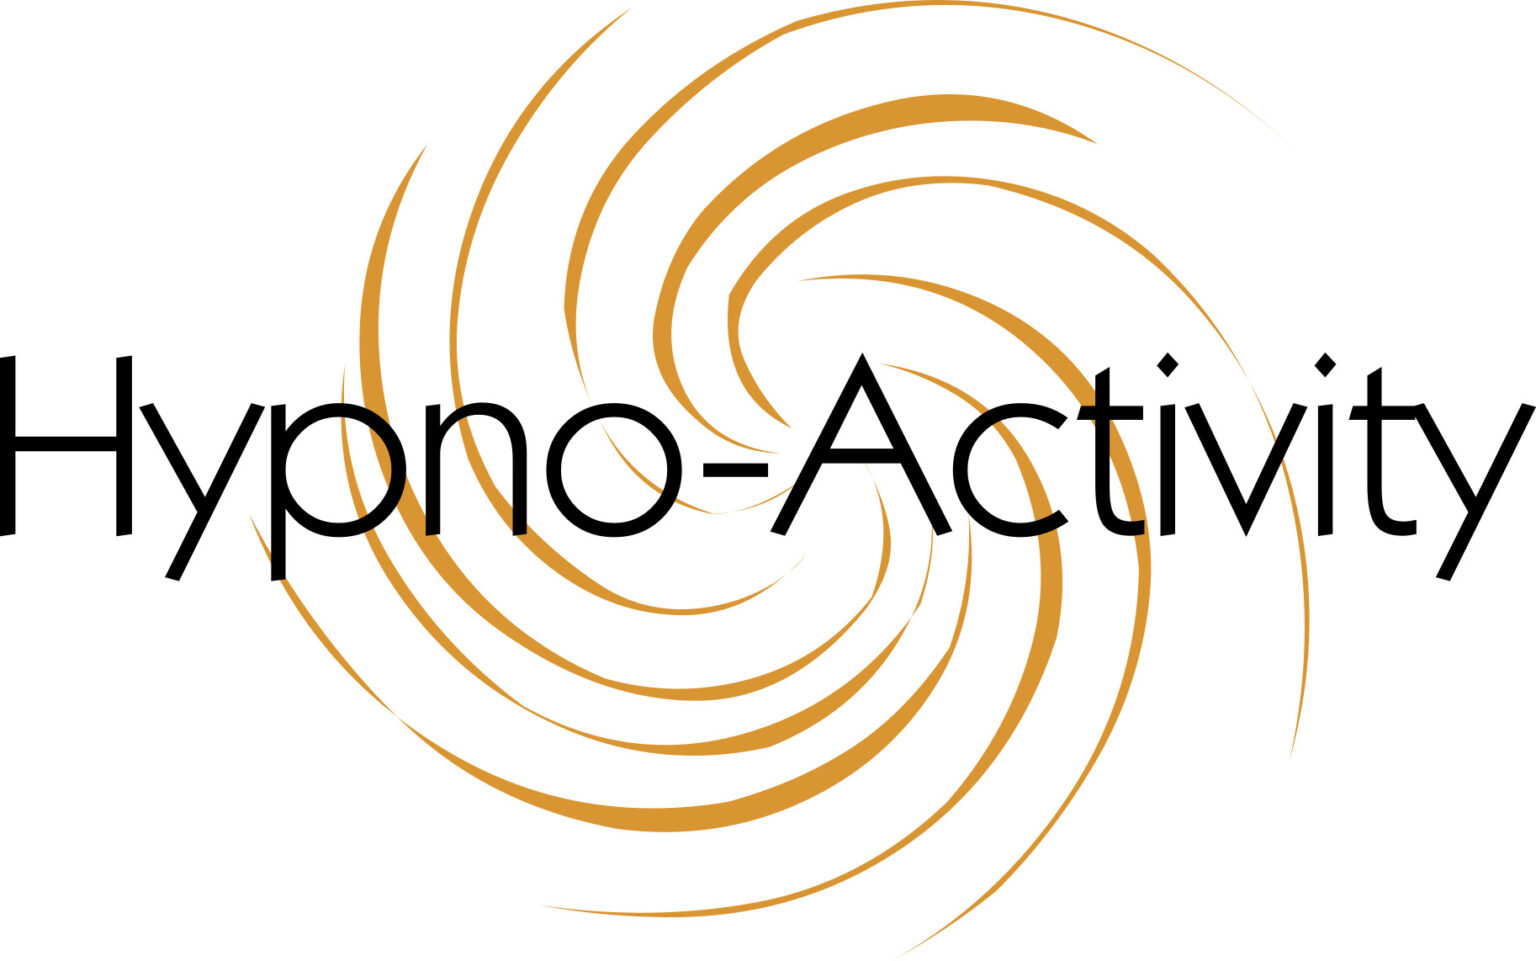 Hypno-Activity